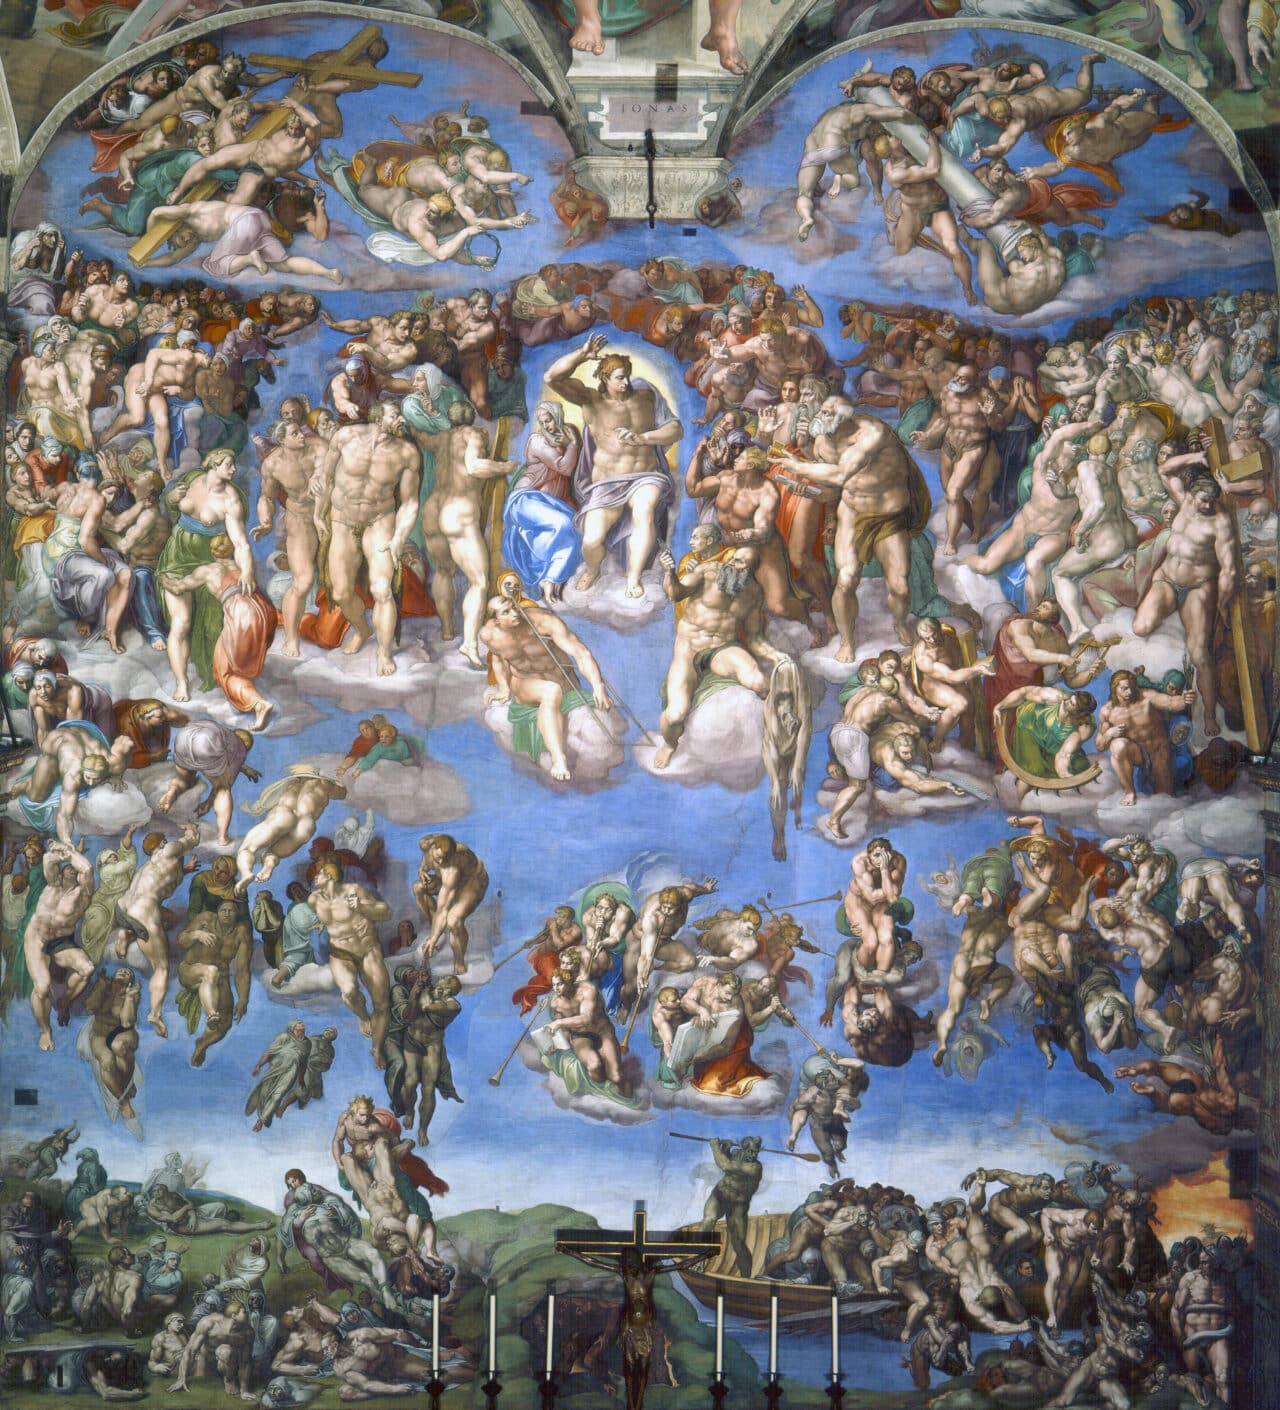 The Last Judgment, Michelangelo (1536 – 1541)
